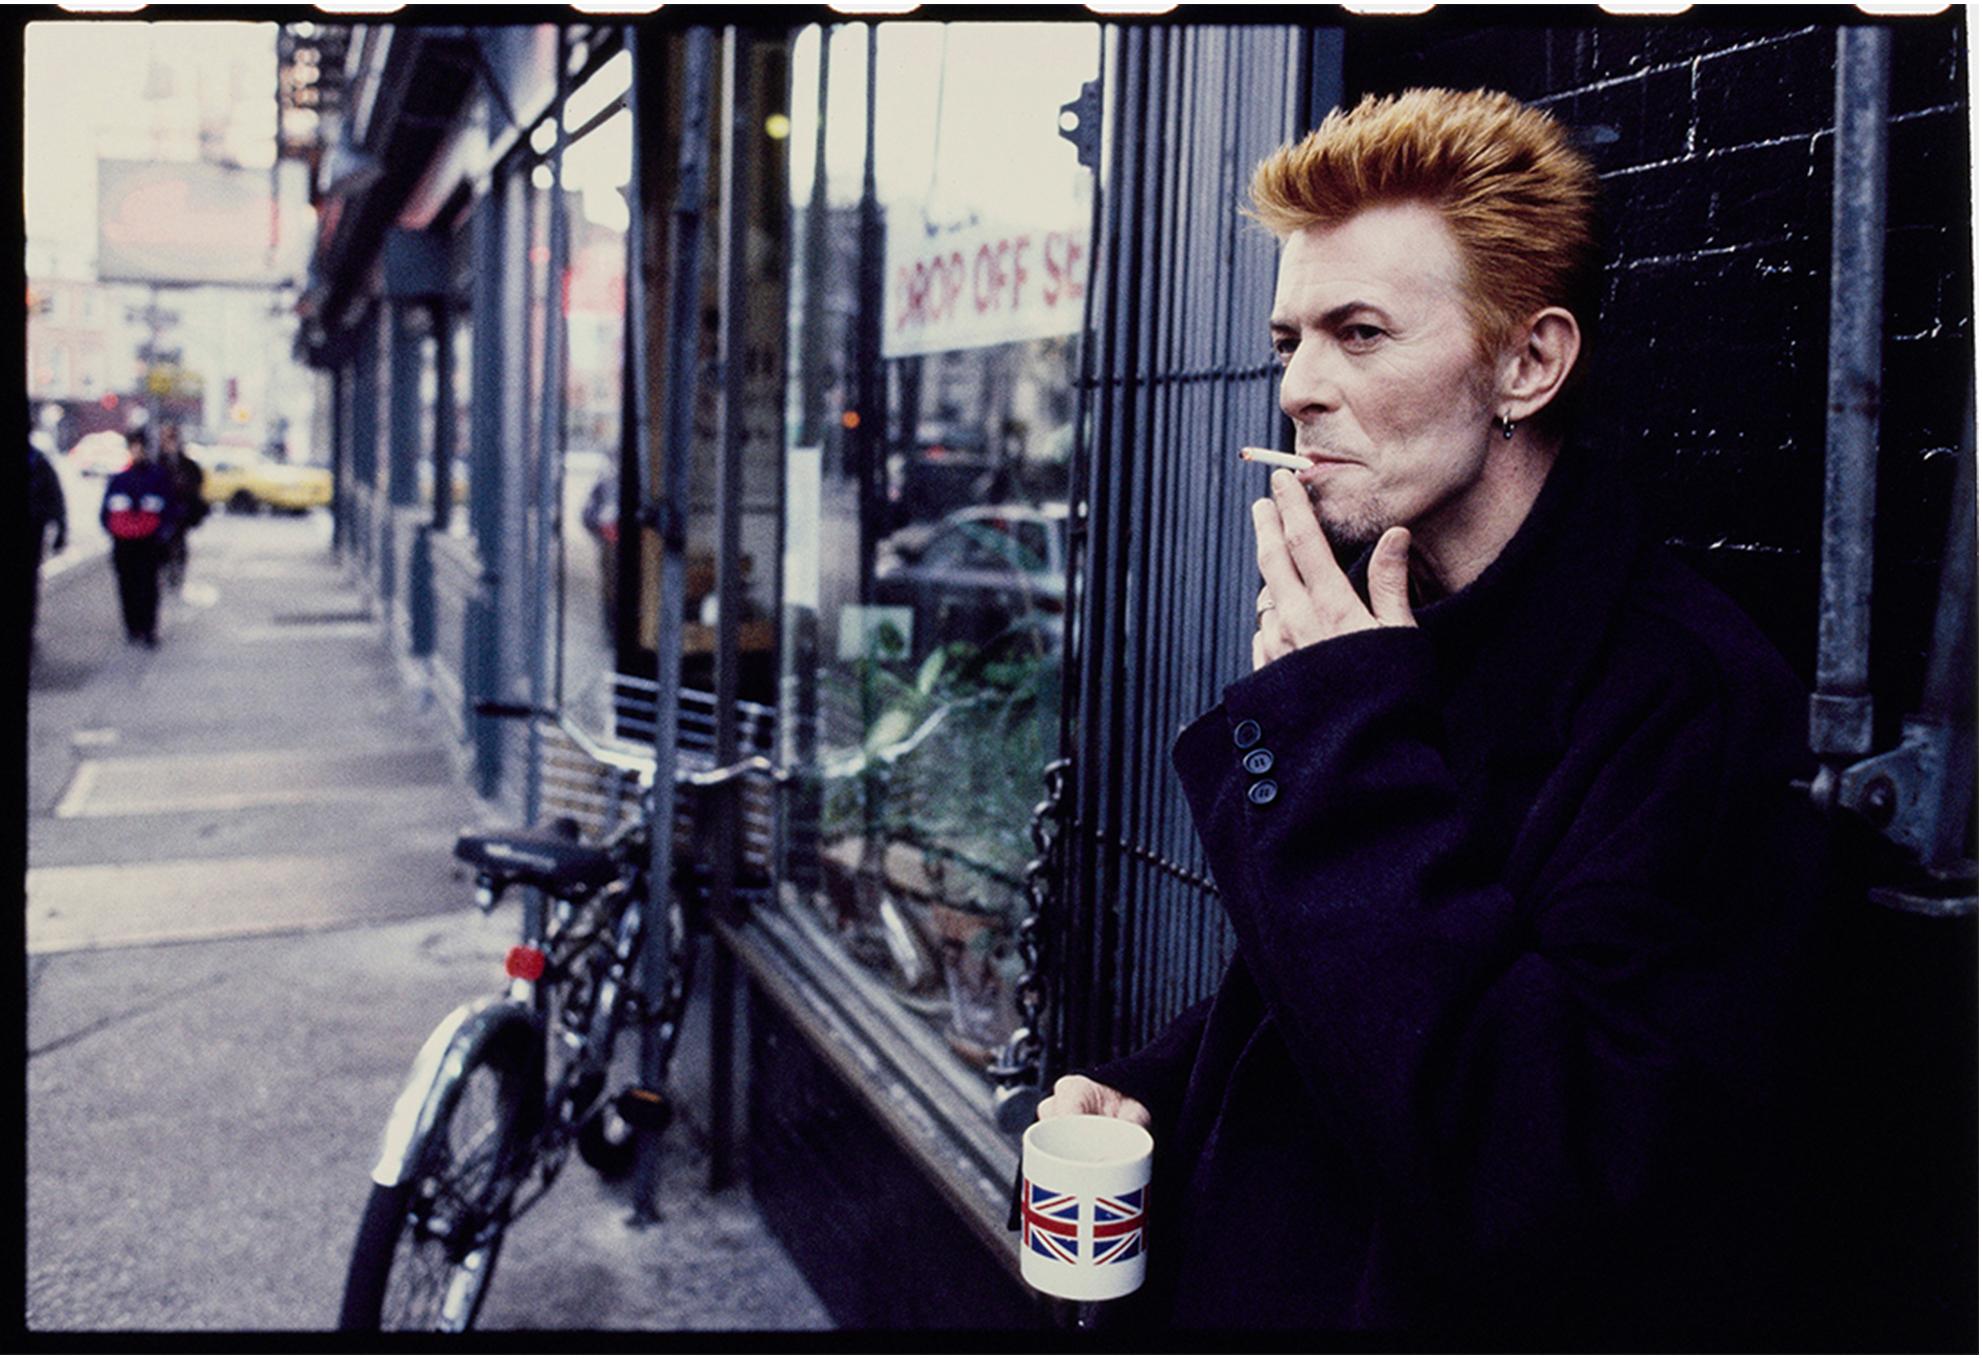 David Bowie Tea and Sympathy New York City, gerahmter signierter Druck in limitierter Auflage